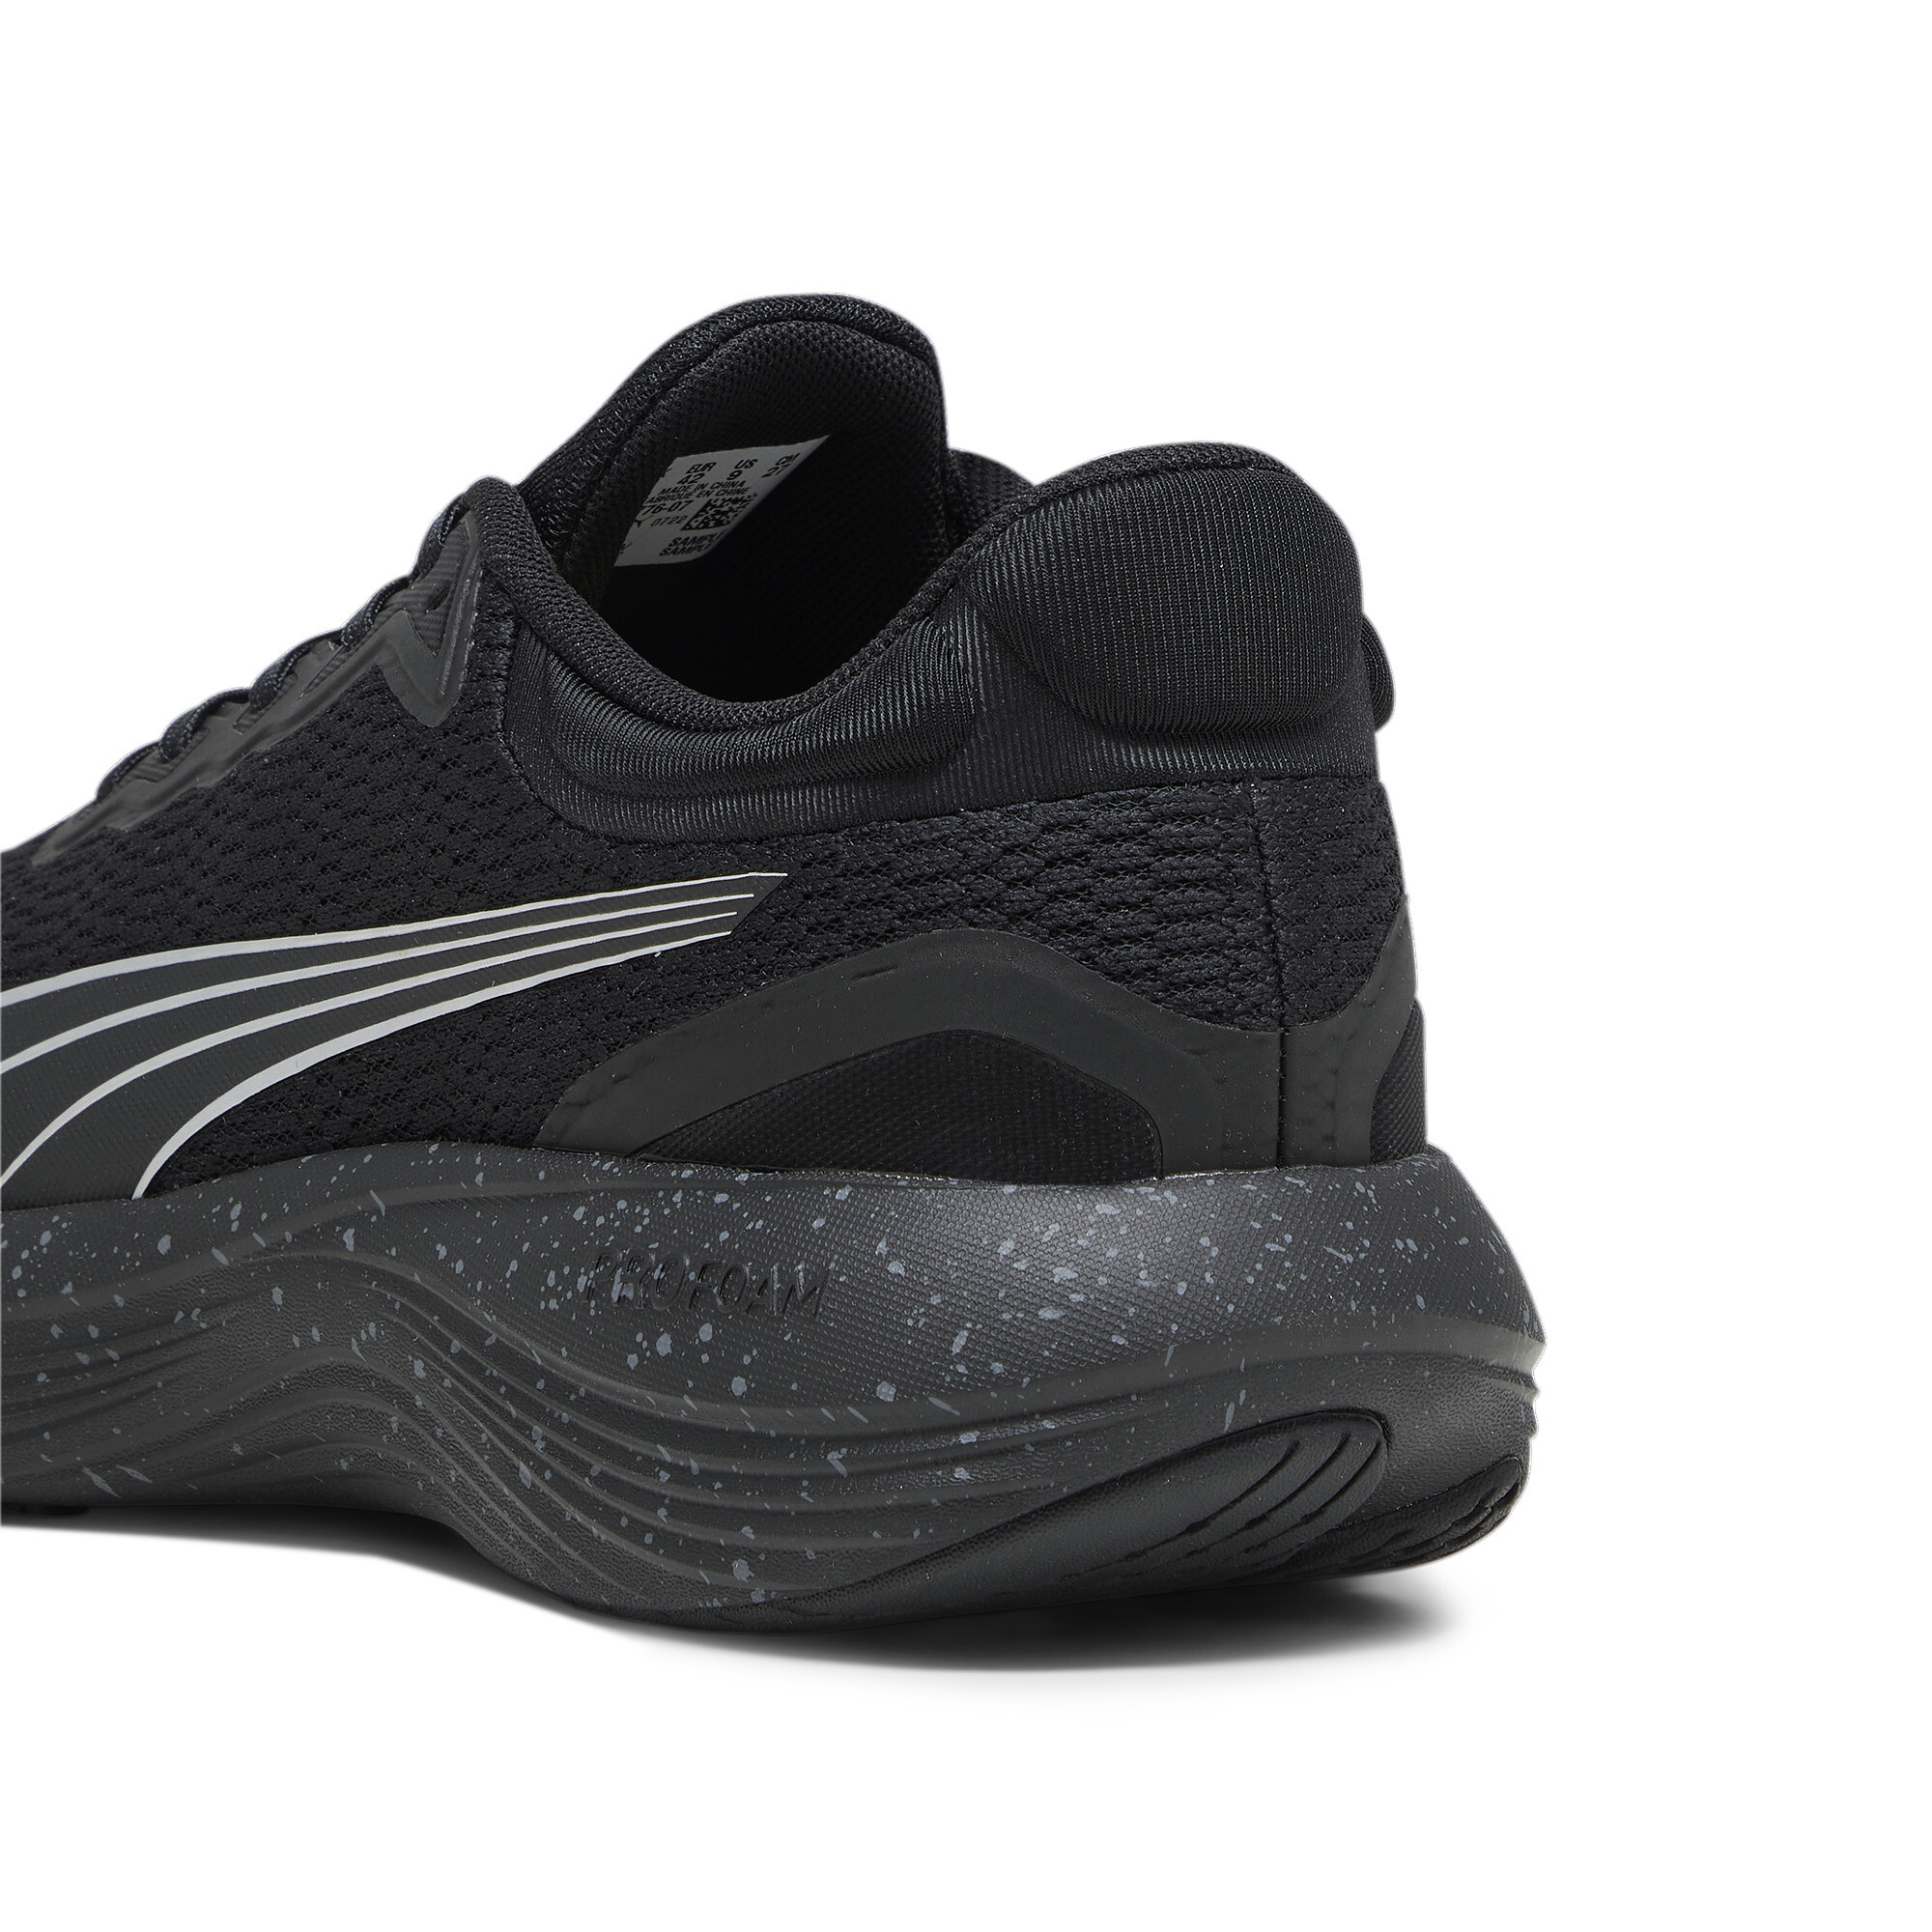 Men's PUMA Scend Pro Running Shoes In Black, Size EU 38